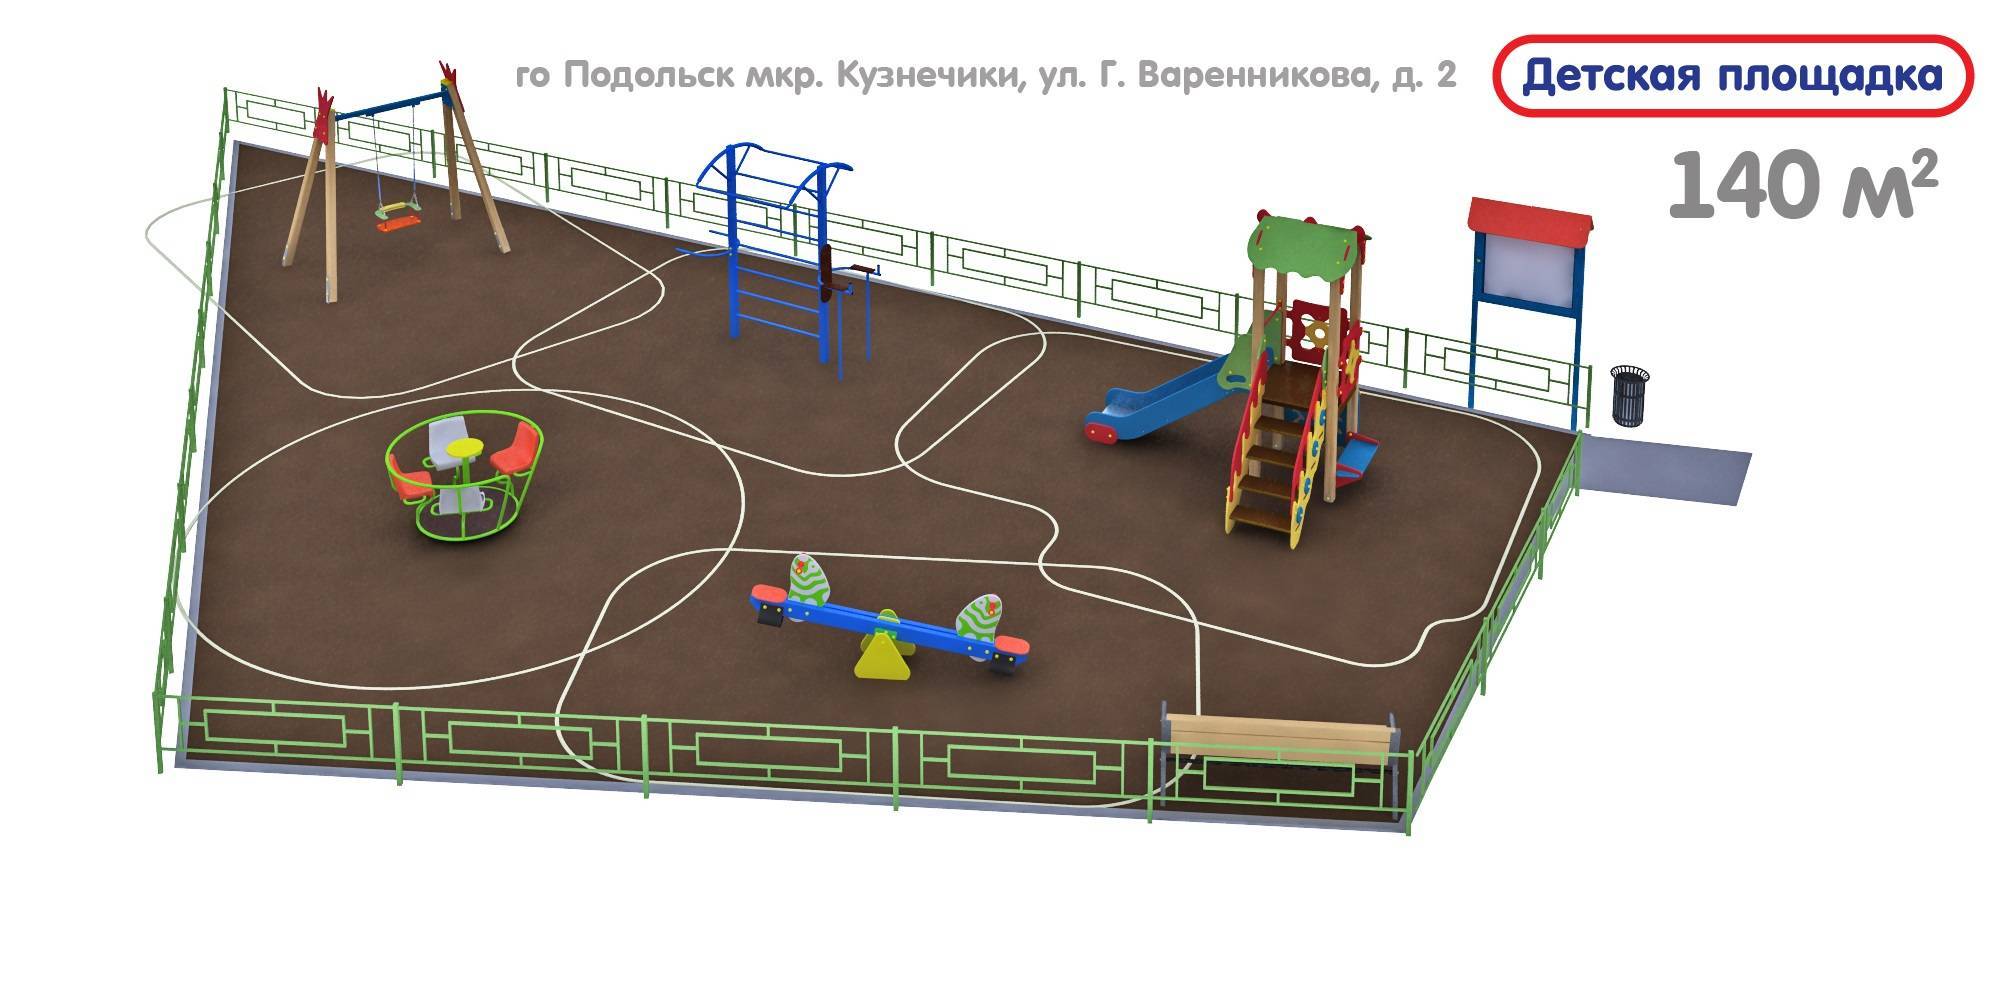 Гост на детские площадки: требования, расстояние, размеры